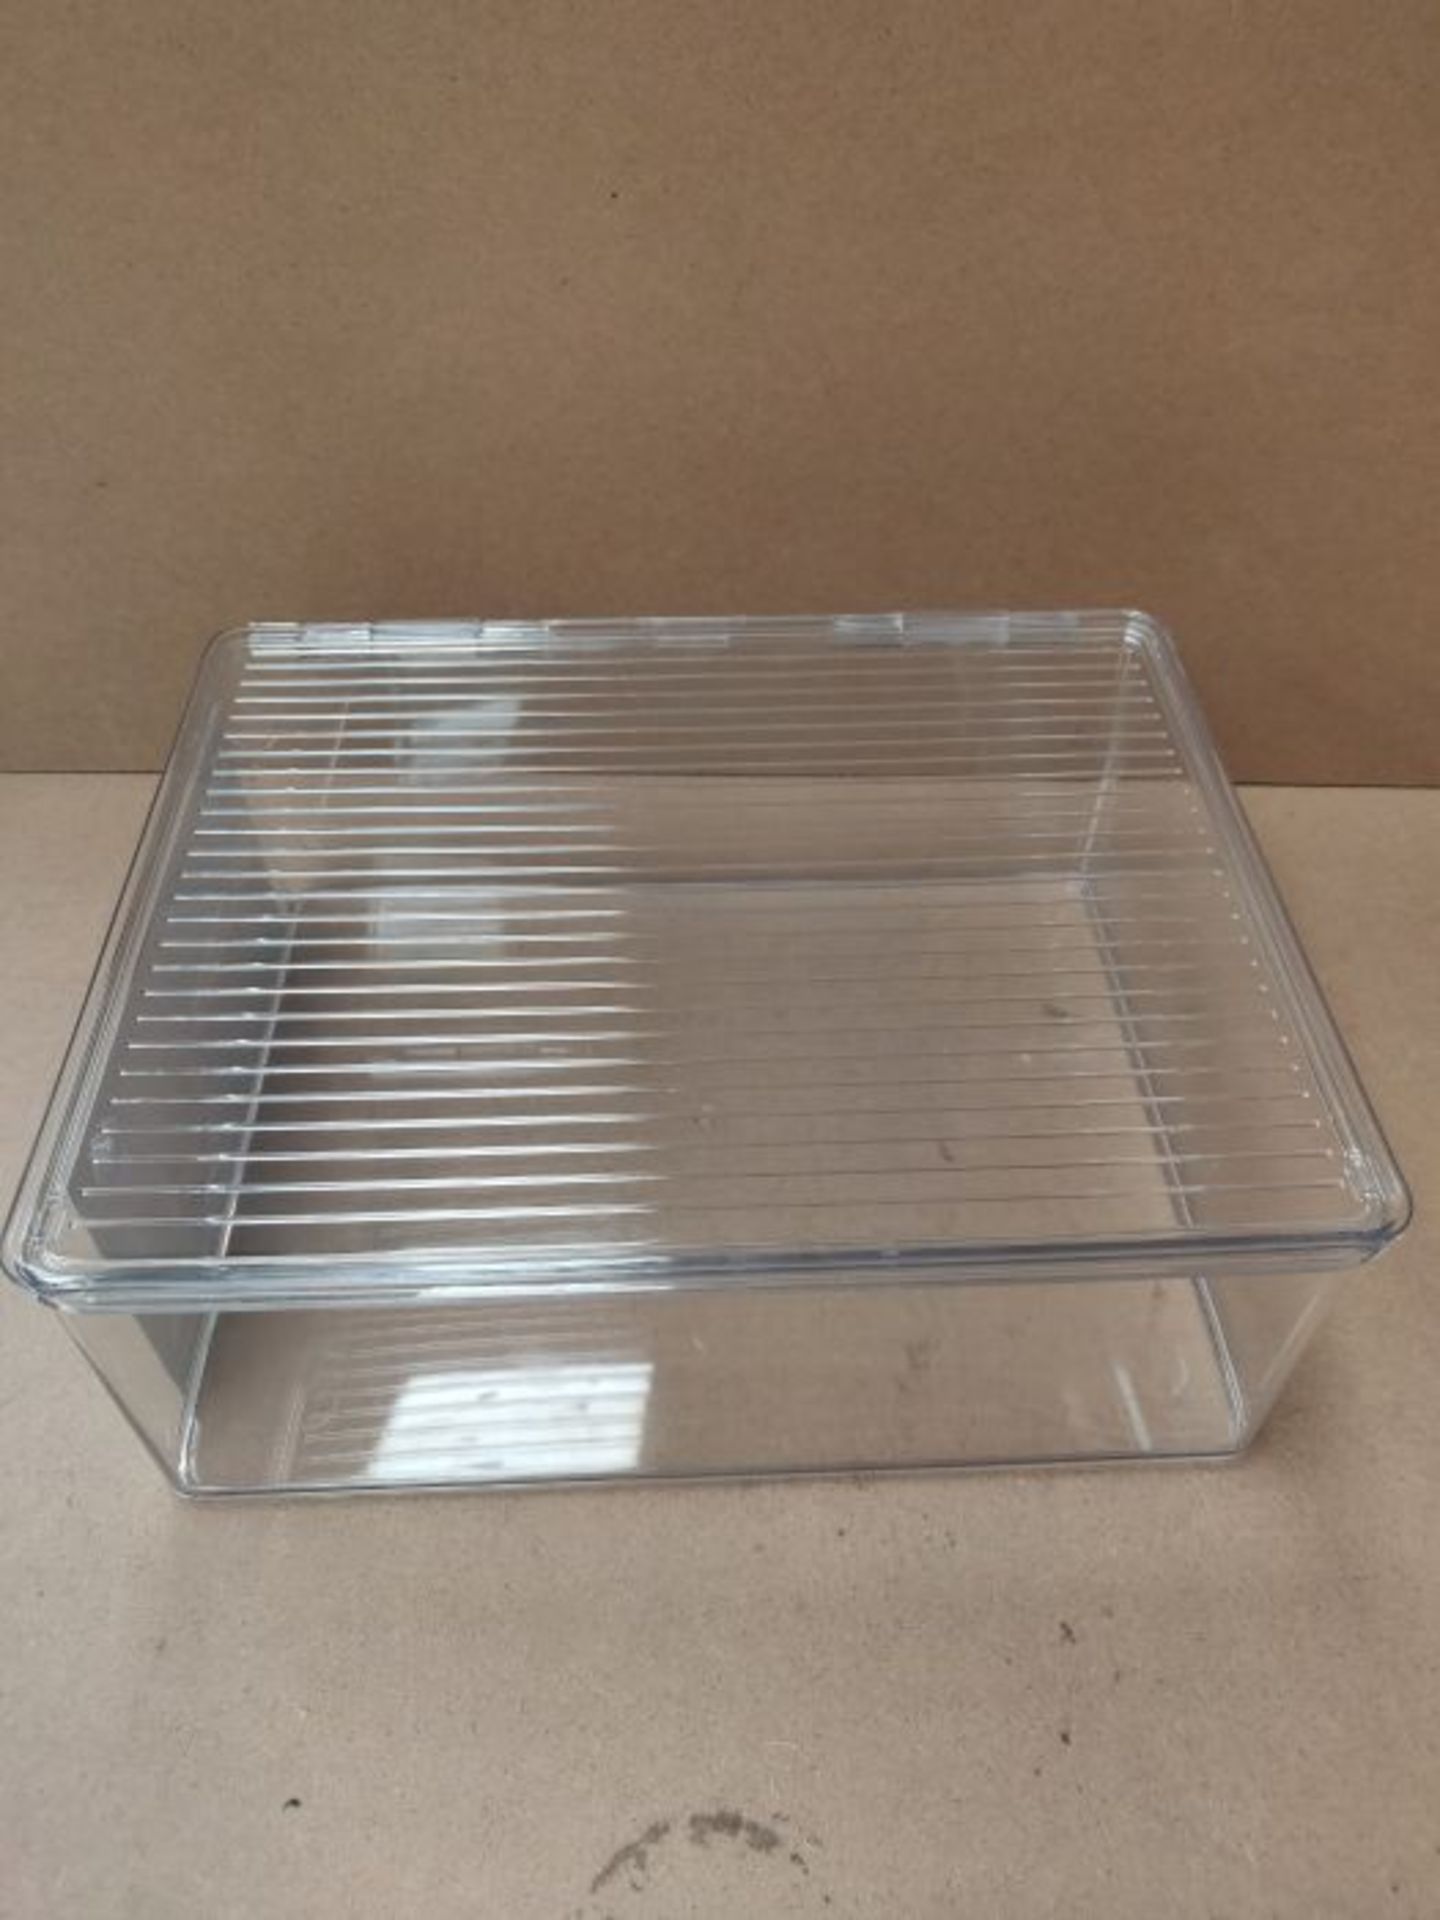 InterDesign 29 x 34 x 12 cm Kitchen Binz Stackable Box, Clear - Image 2 of 2